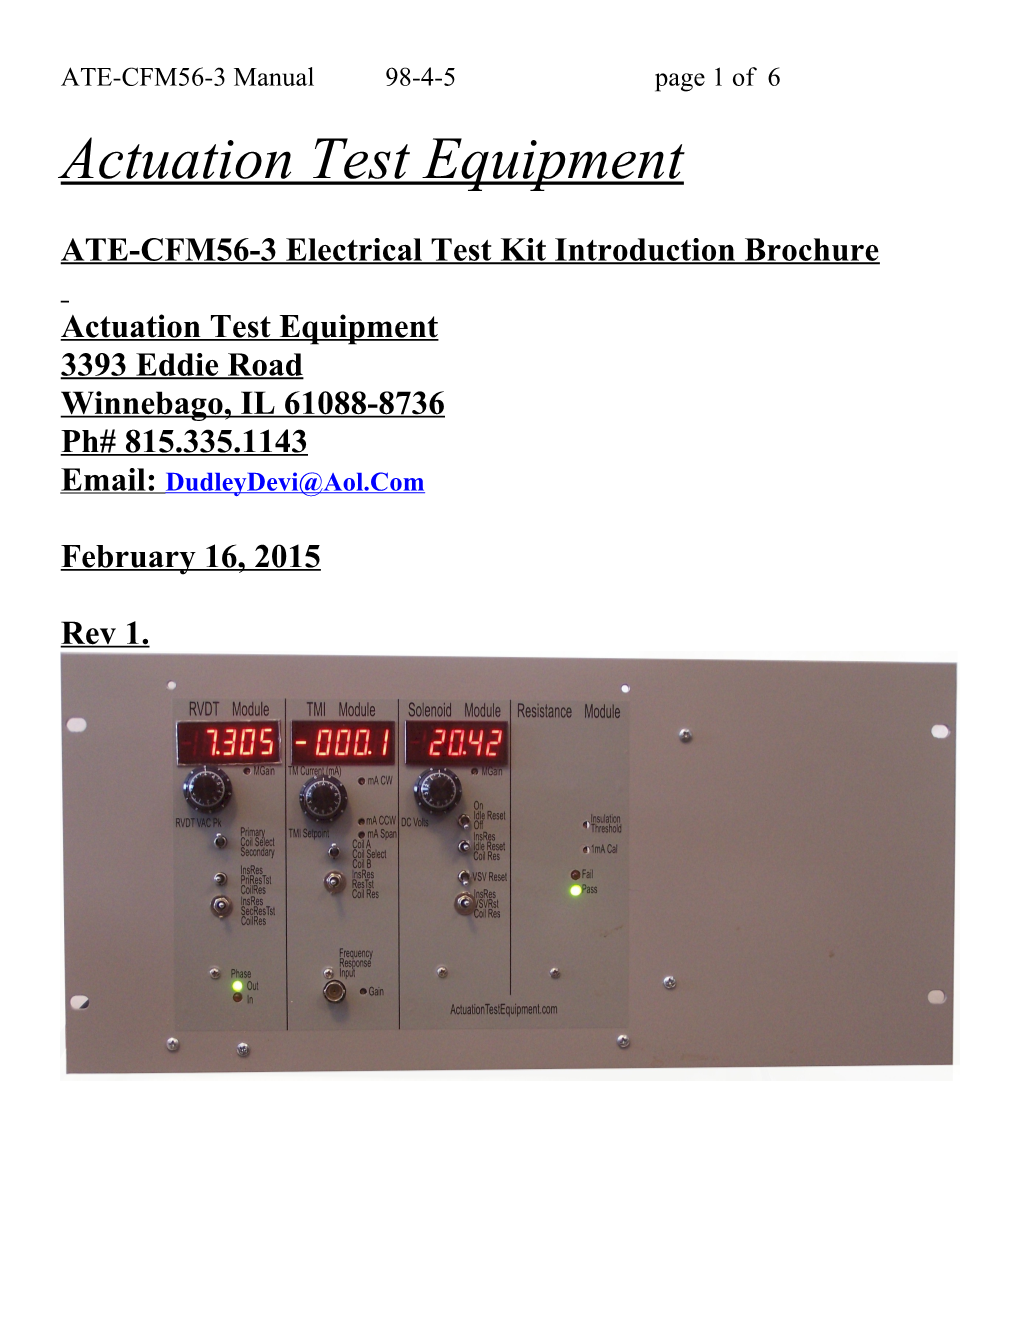 Actuation Test Equipment